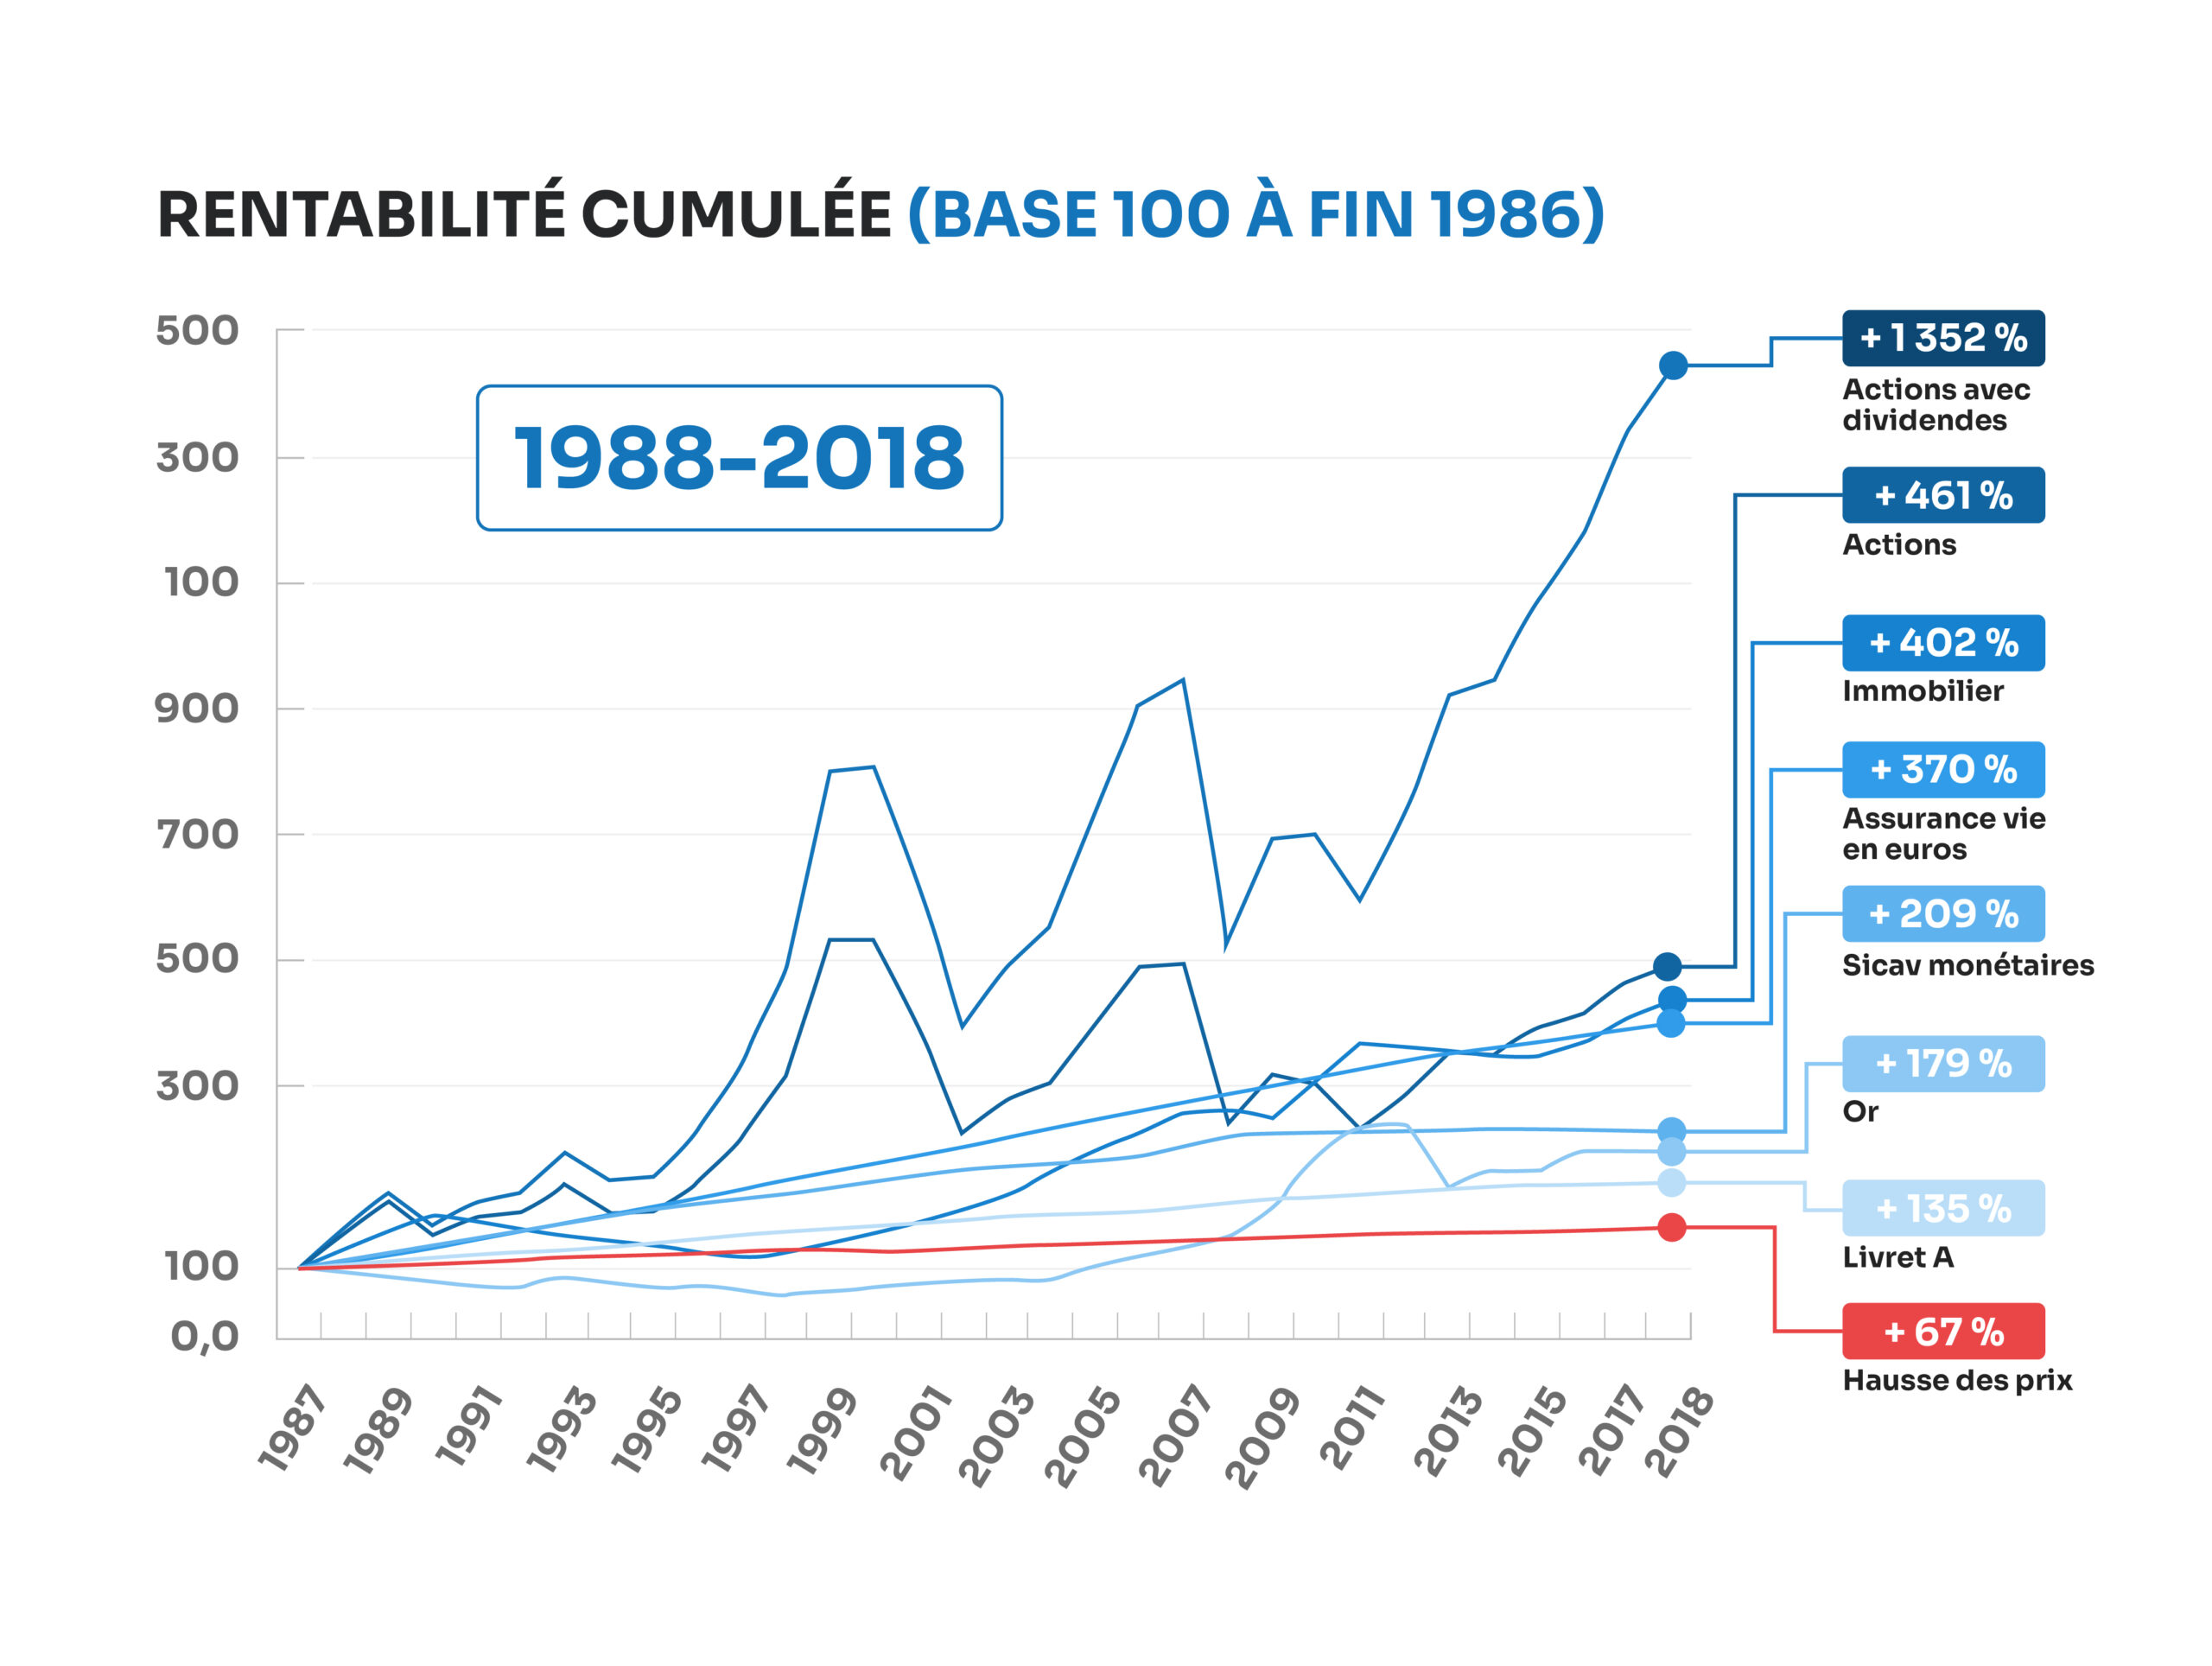 RENTABILITÉ CUMULÉE de tous les actifs (BASE 100 À FIN 1986)